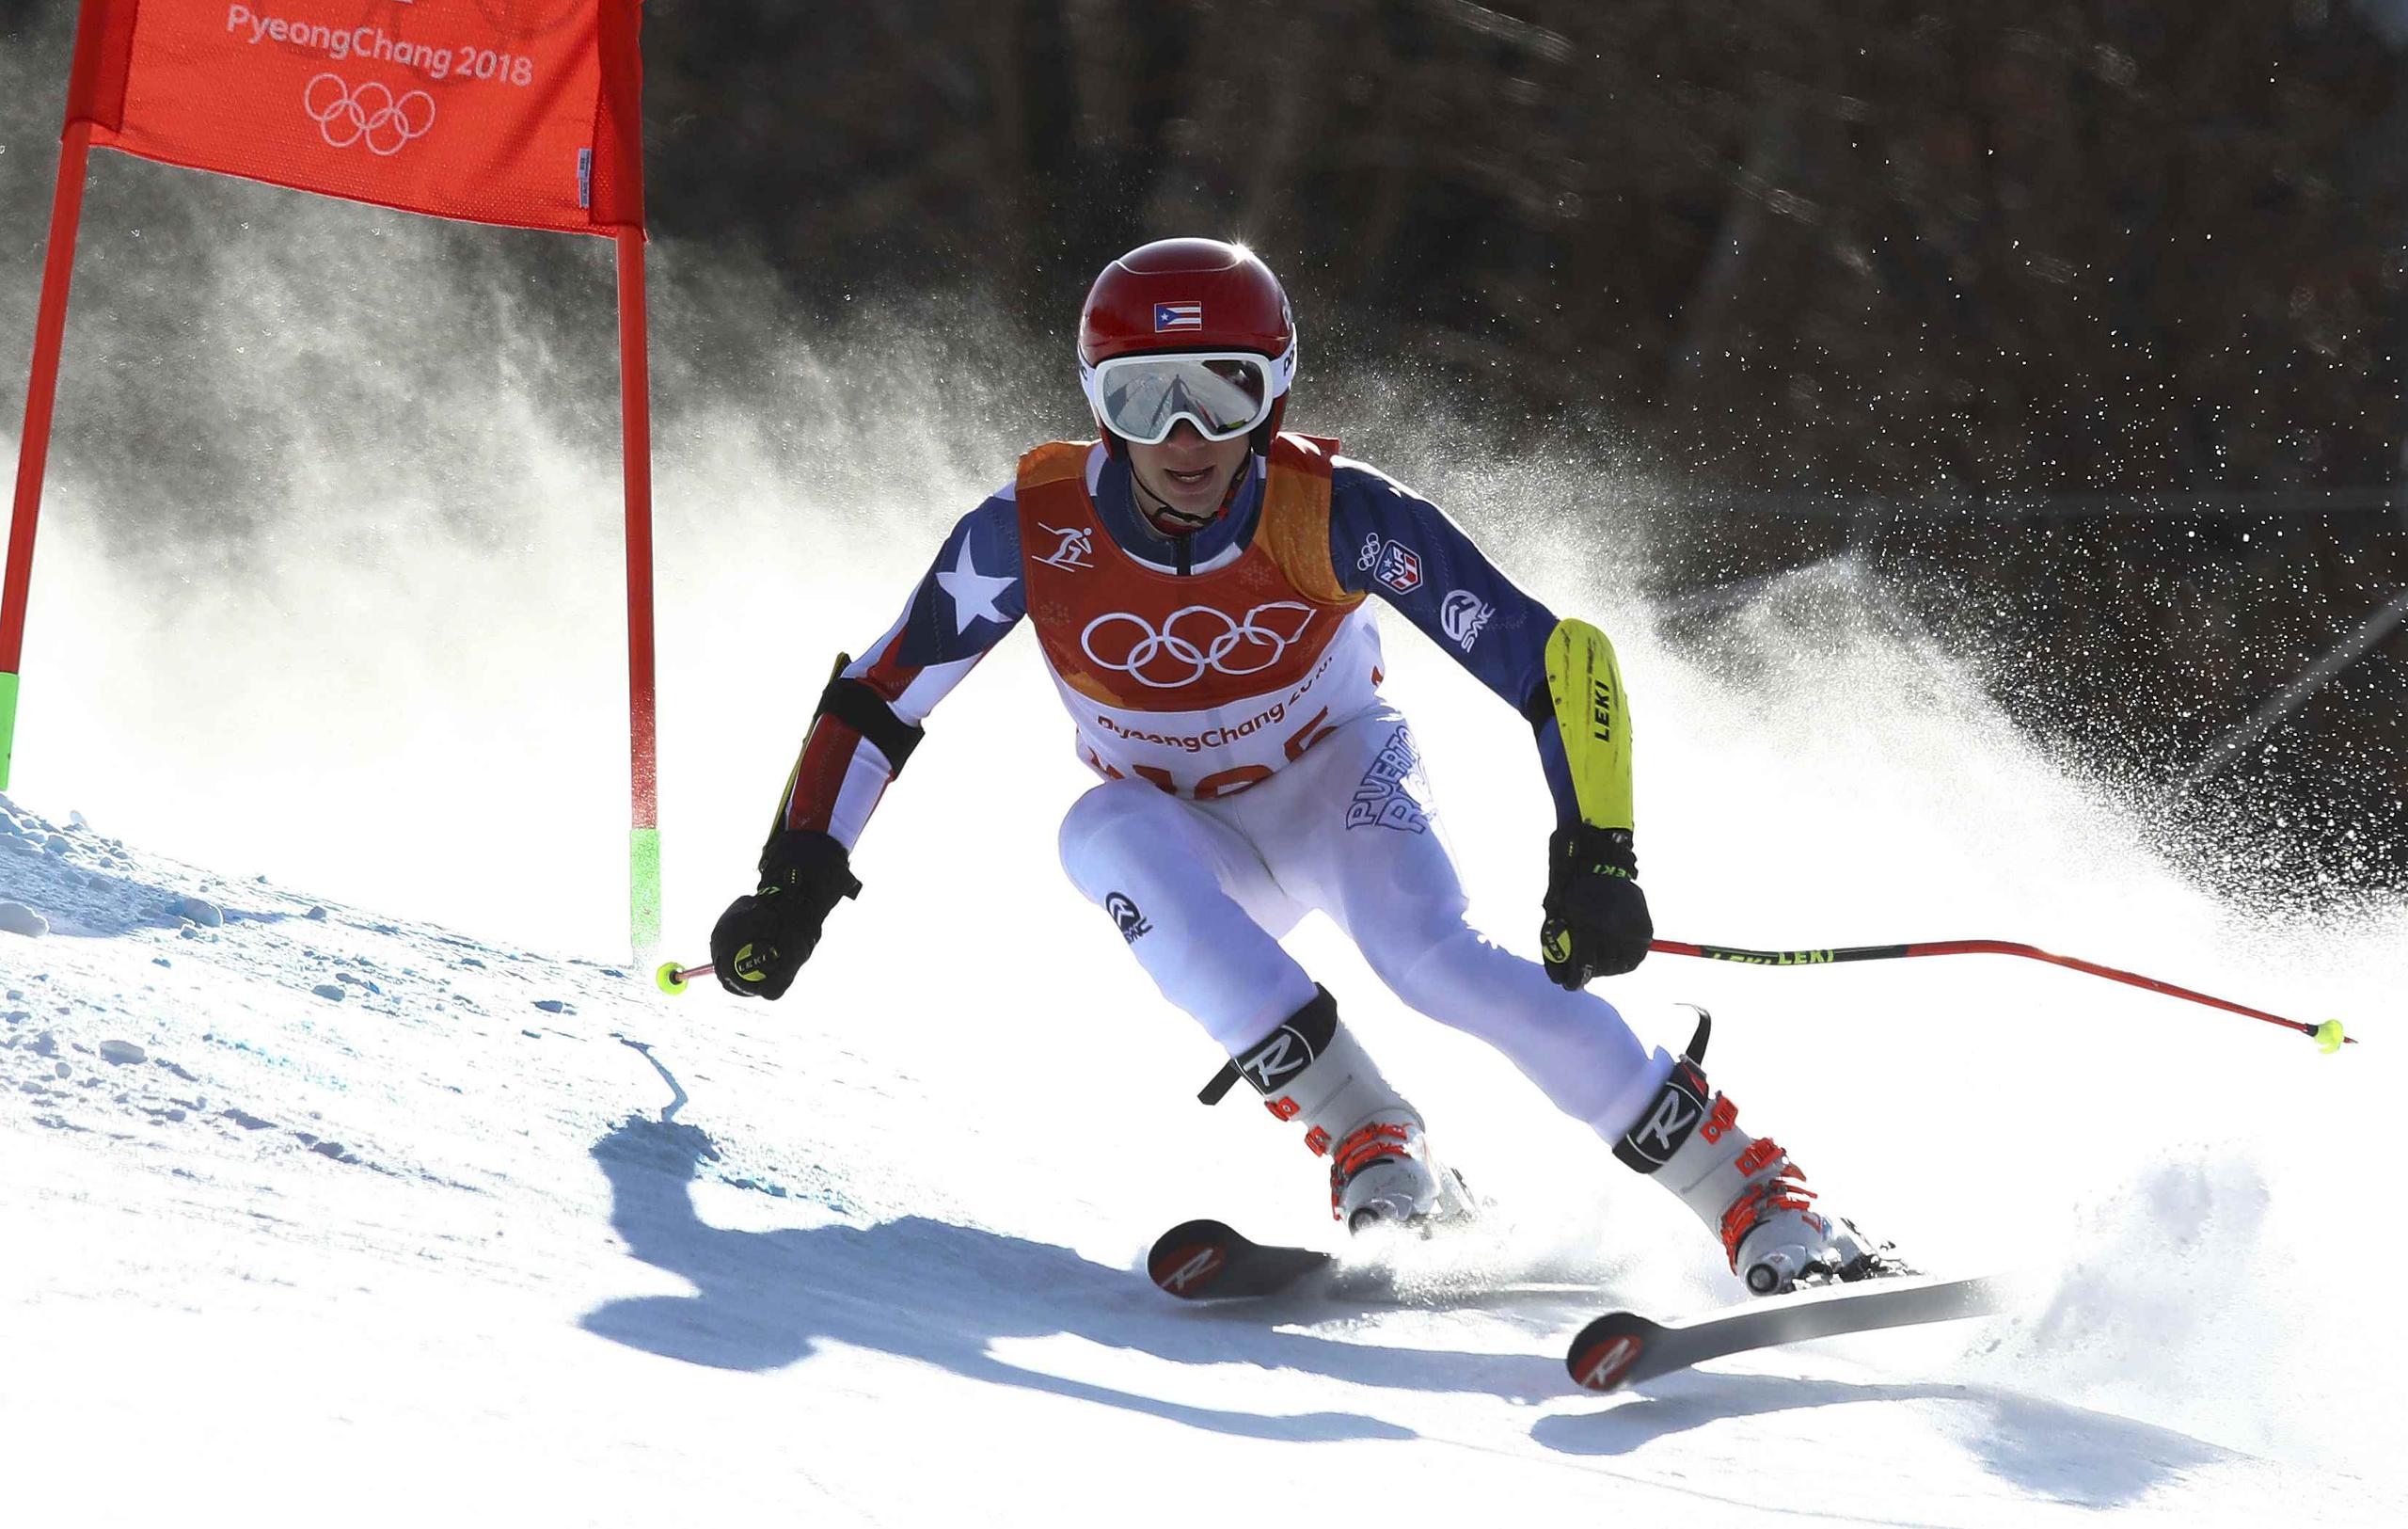 Dennis Flaherty era el padre del esquiador Charles Flaherty, quien en los Juegos Olímpicos Invernales de Pyeongchang 2018 (Corea del Sur) se convirtió en el primer representante de Puerto Rico en participar y completar su evento. (GFR Media)